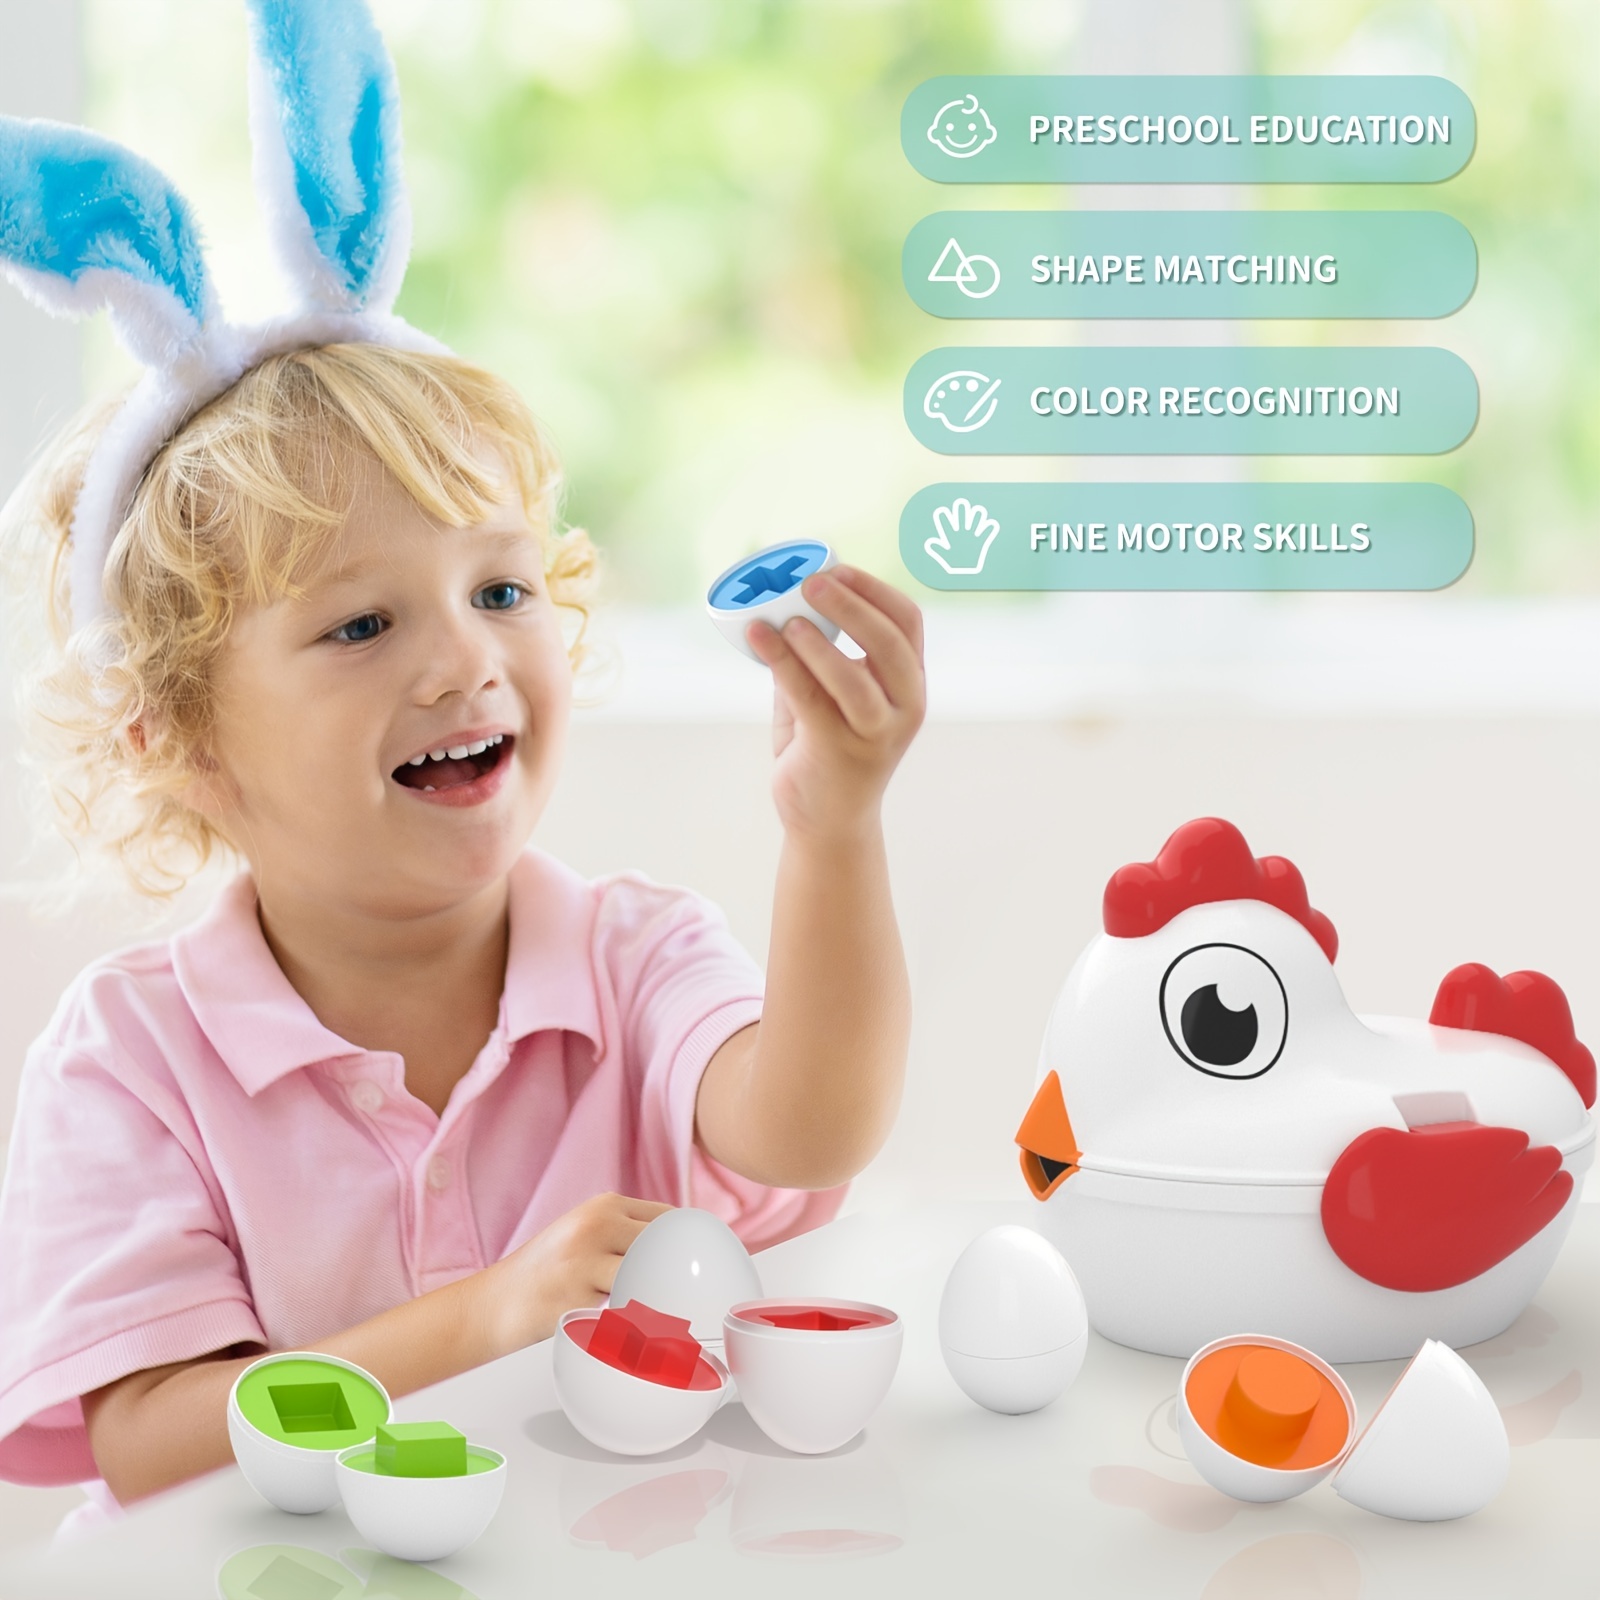 Acheter Jouets d'œufs de poule pour tout-petits, trieur de formes de jeu de  correspondance des couleurs pour enfants, jouets sensoriels de motricité  Fine, jouets éducatifs